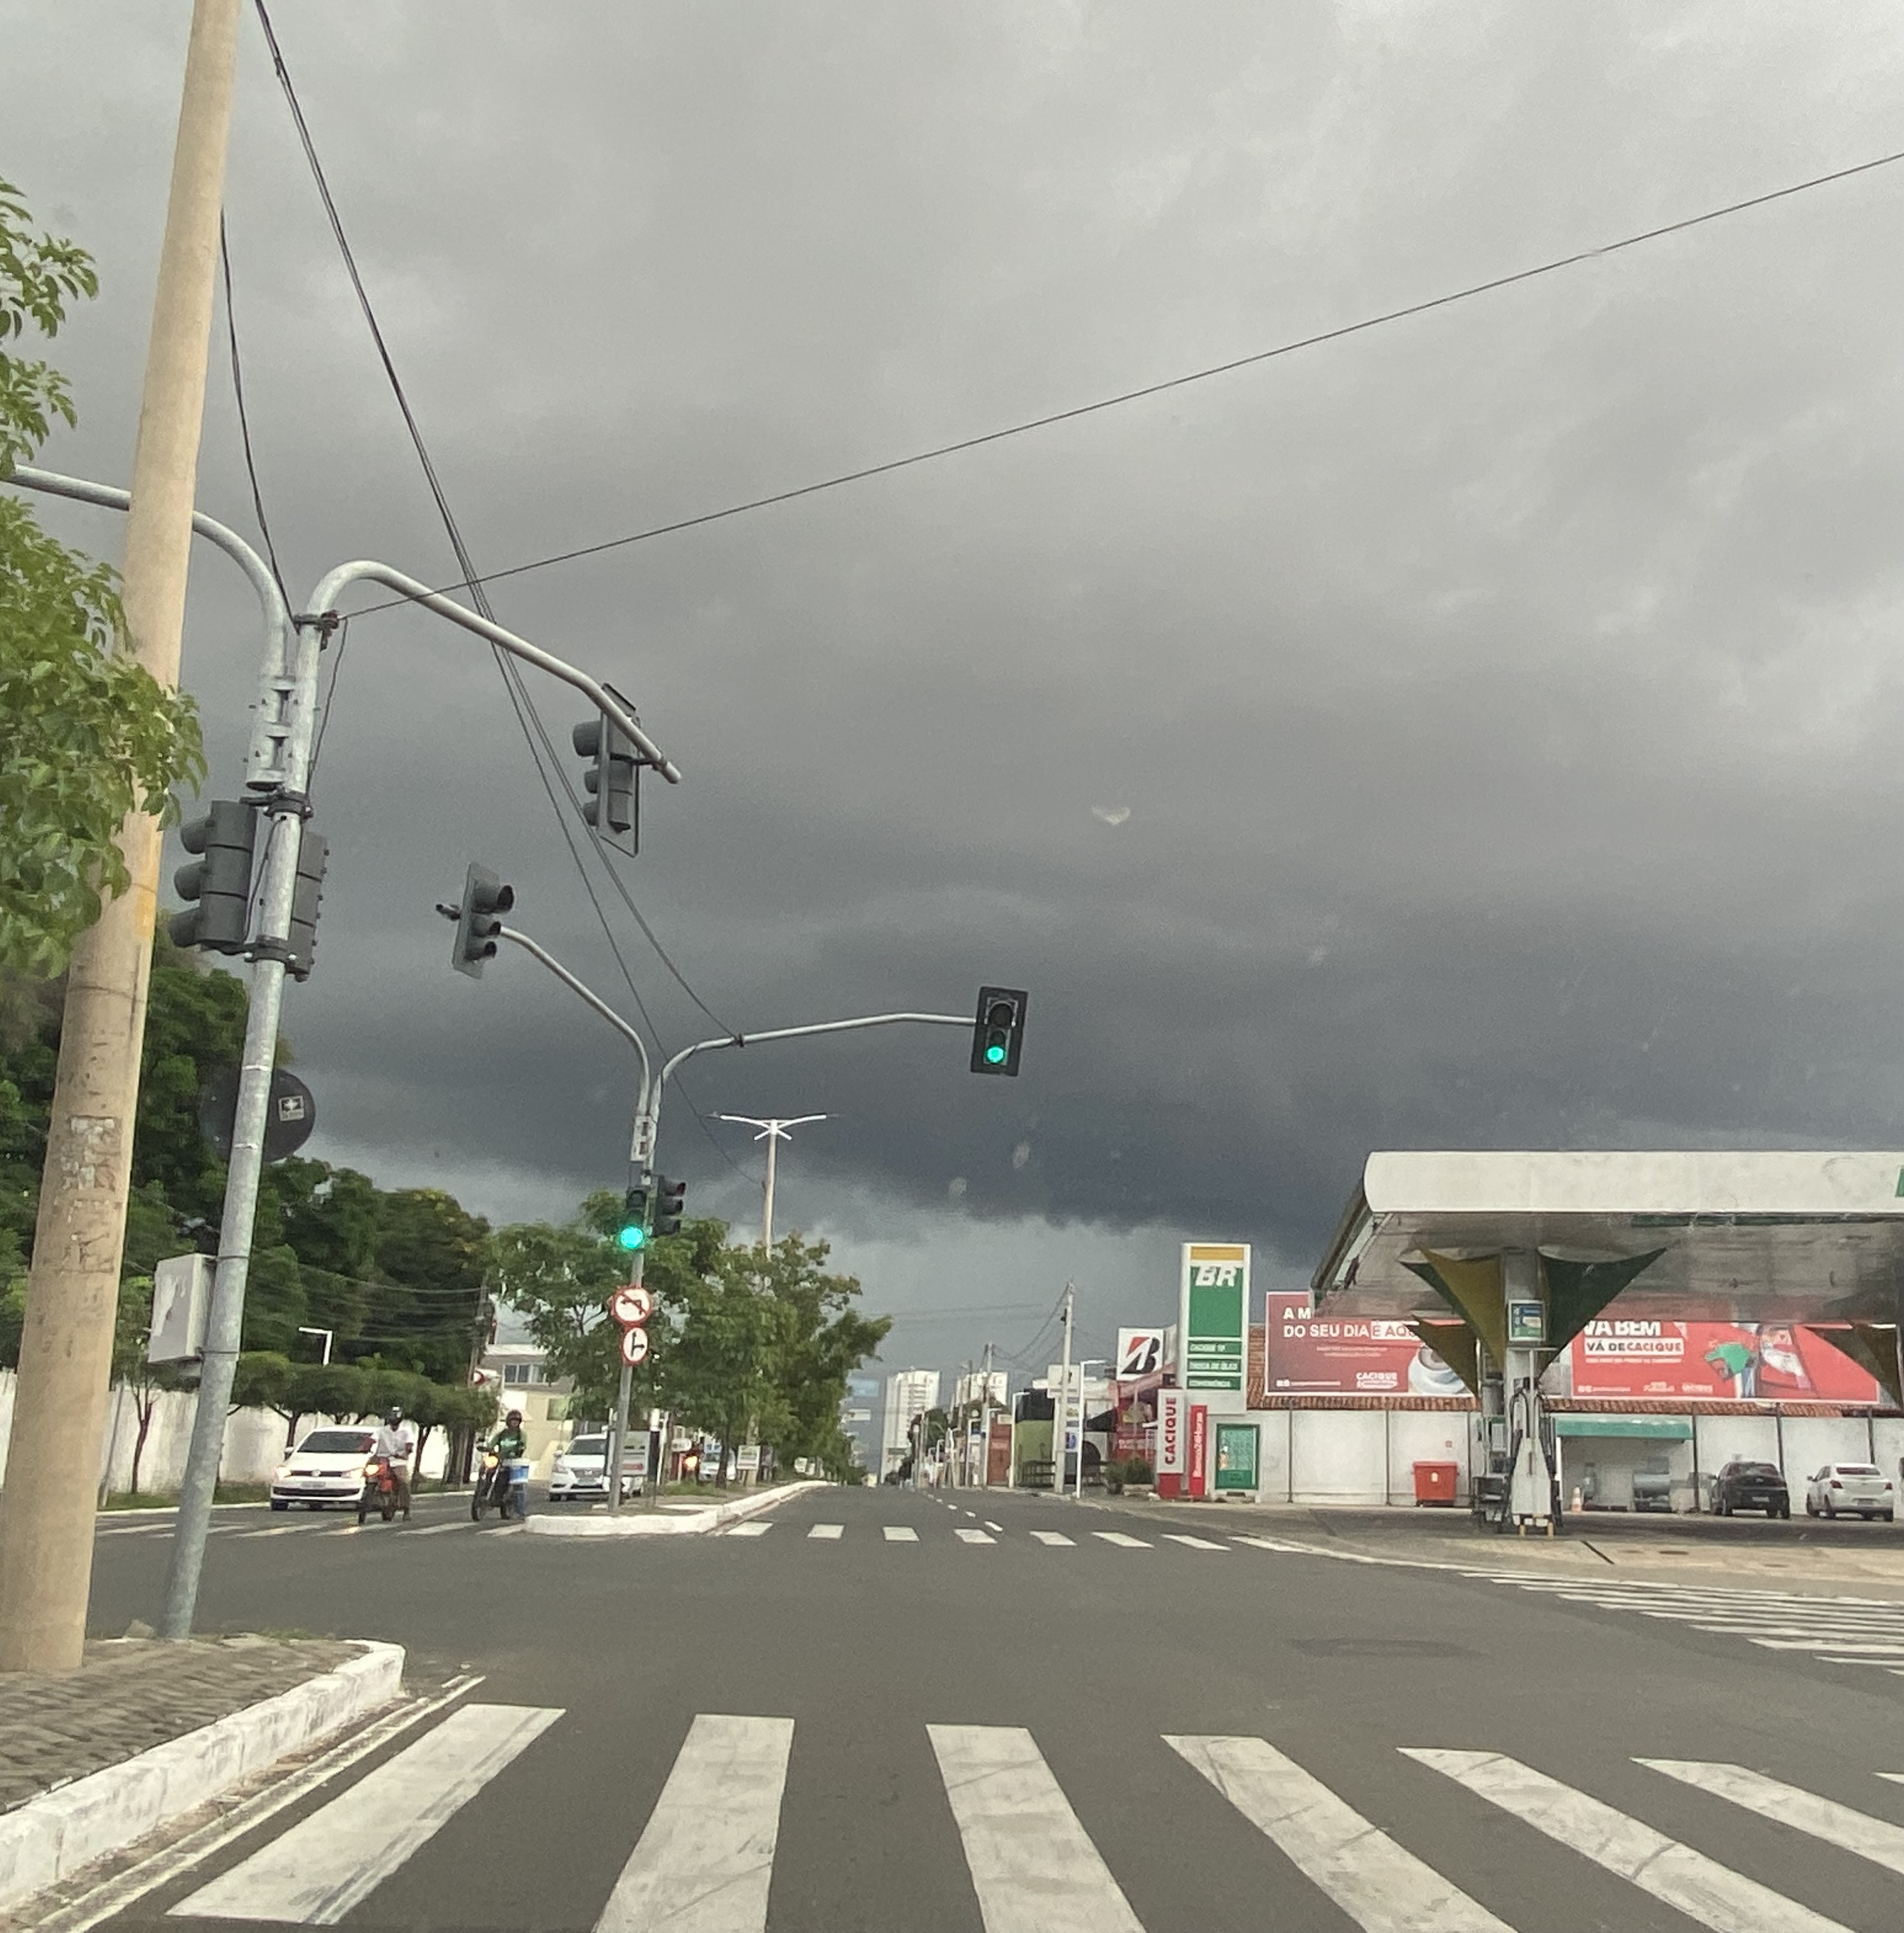 Cidades piauienses recebem alerta de chuvas com 100 mm hoje, diz Inmet